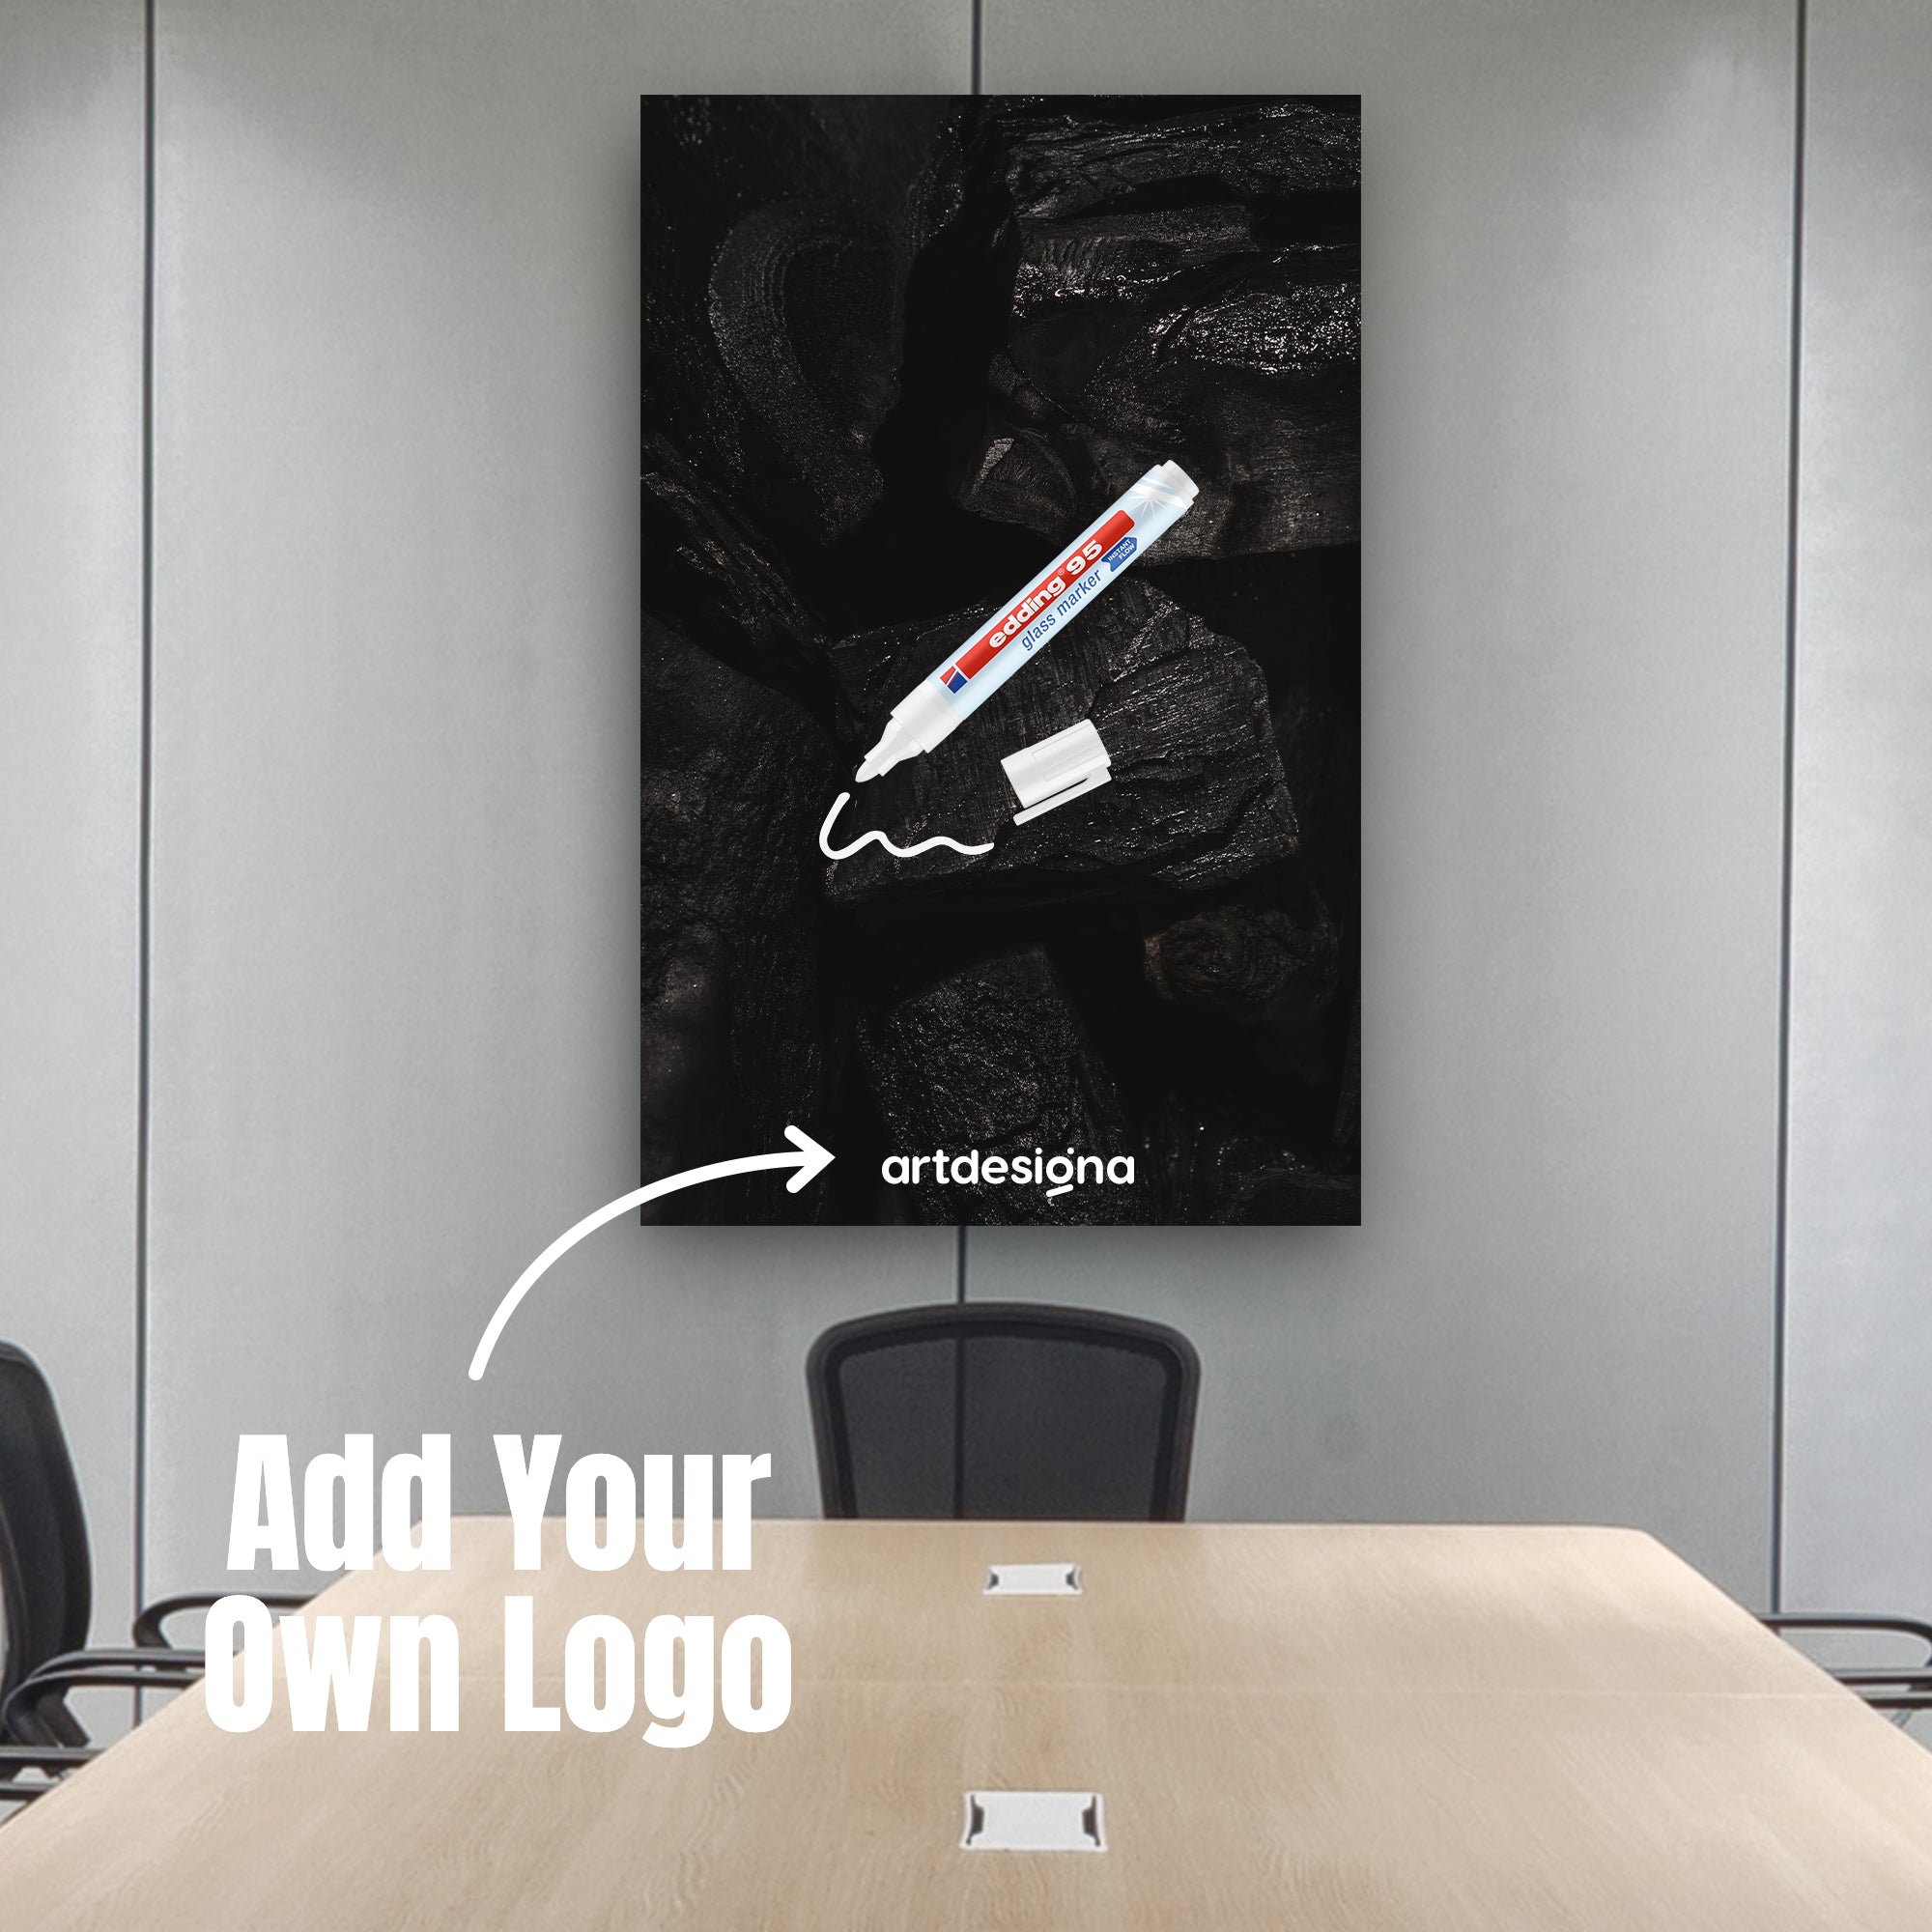 Maßgeschneiderte kreative Glastafel für Büro/Arbeitsplatz – 6 x Edding-Marker-Set im Lieferumfang enthalten